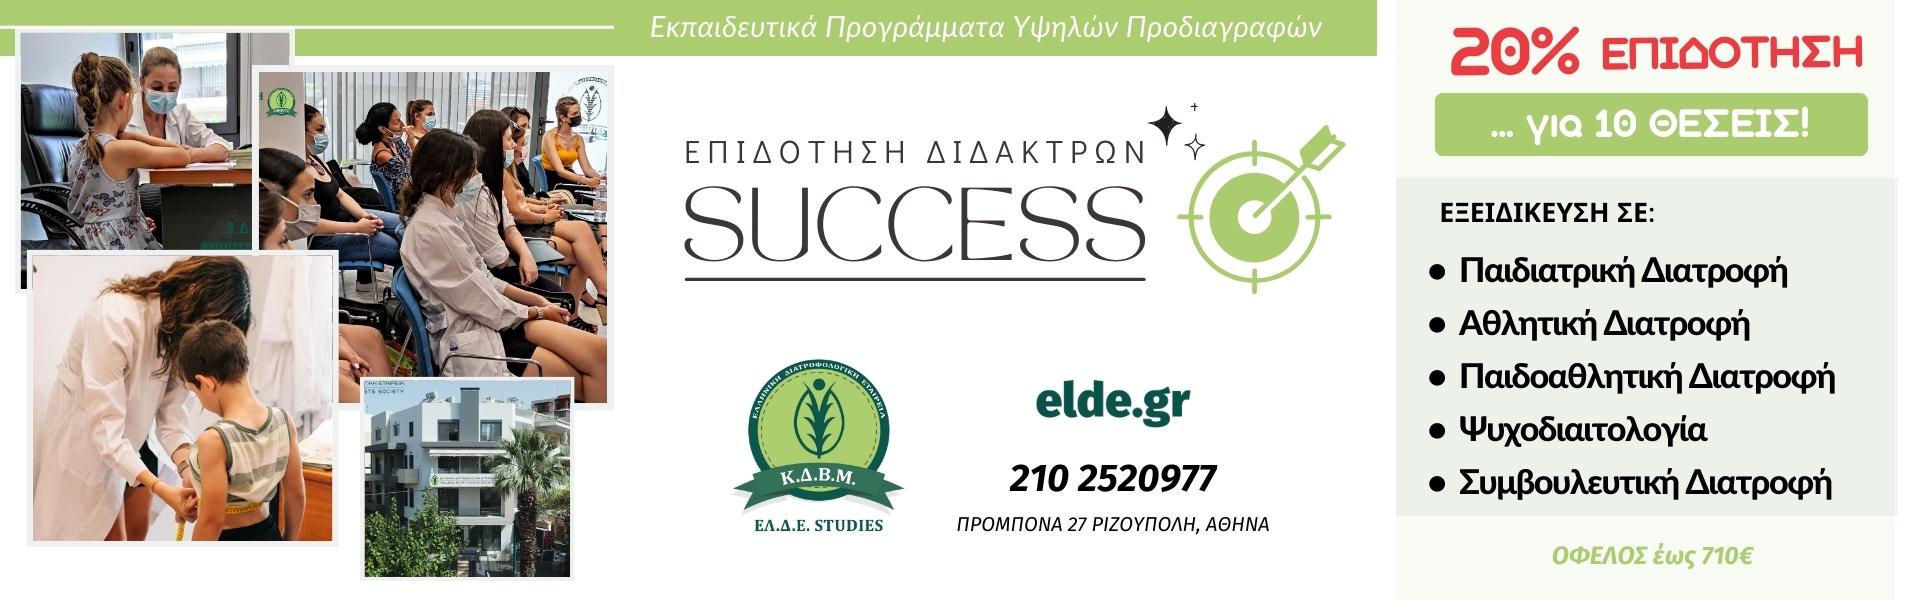 eDIET Support by Dr. Dimitris Grigorakis - e-Diet Support by Dr. Dimitris Grigorakis